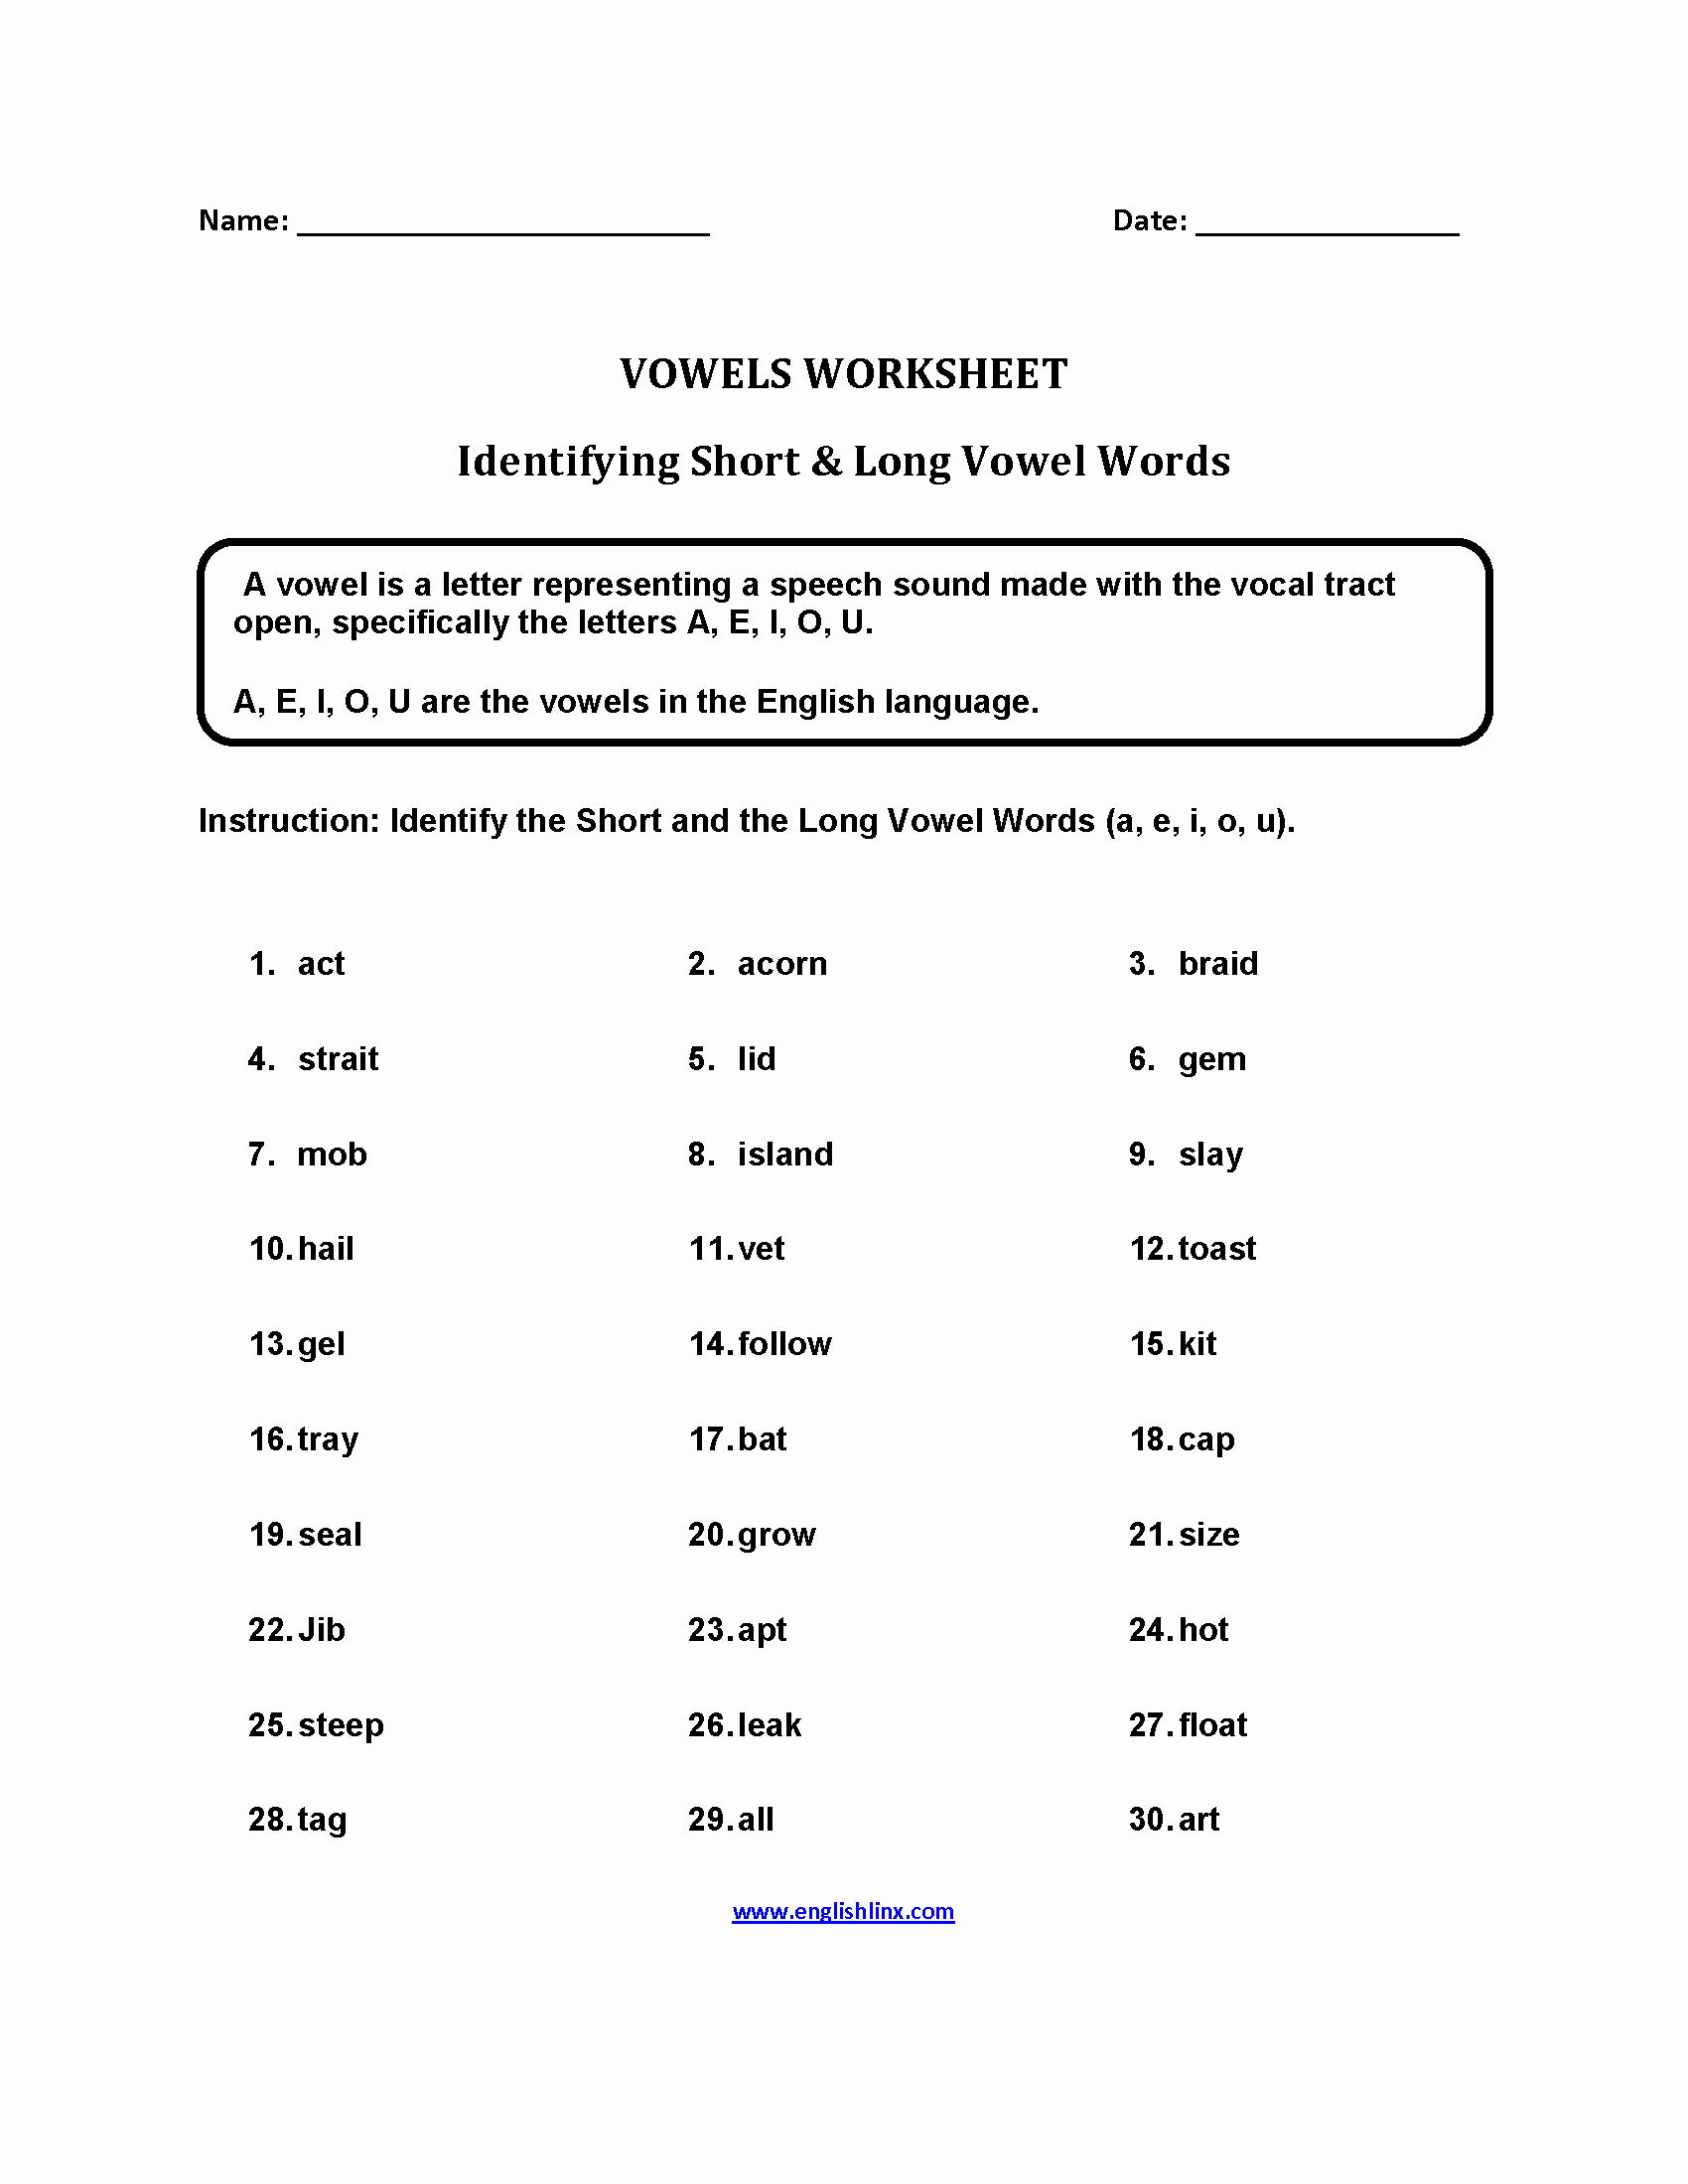 Short and Long Vowels Worksheet Elegant Englishlinx